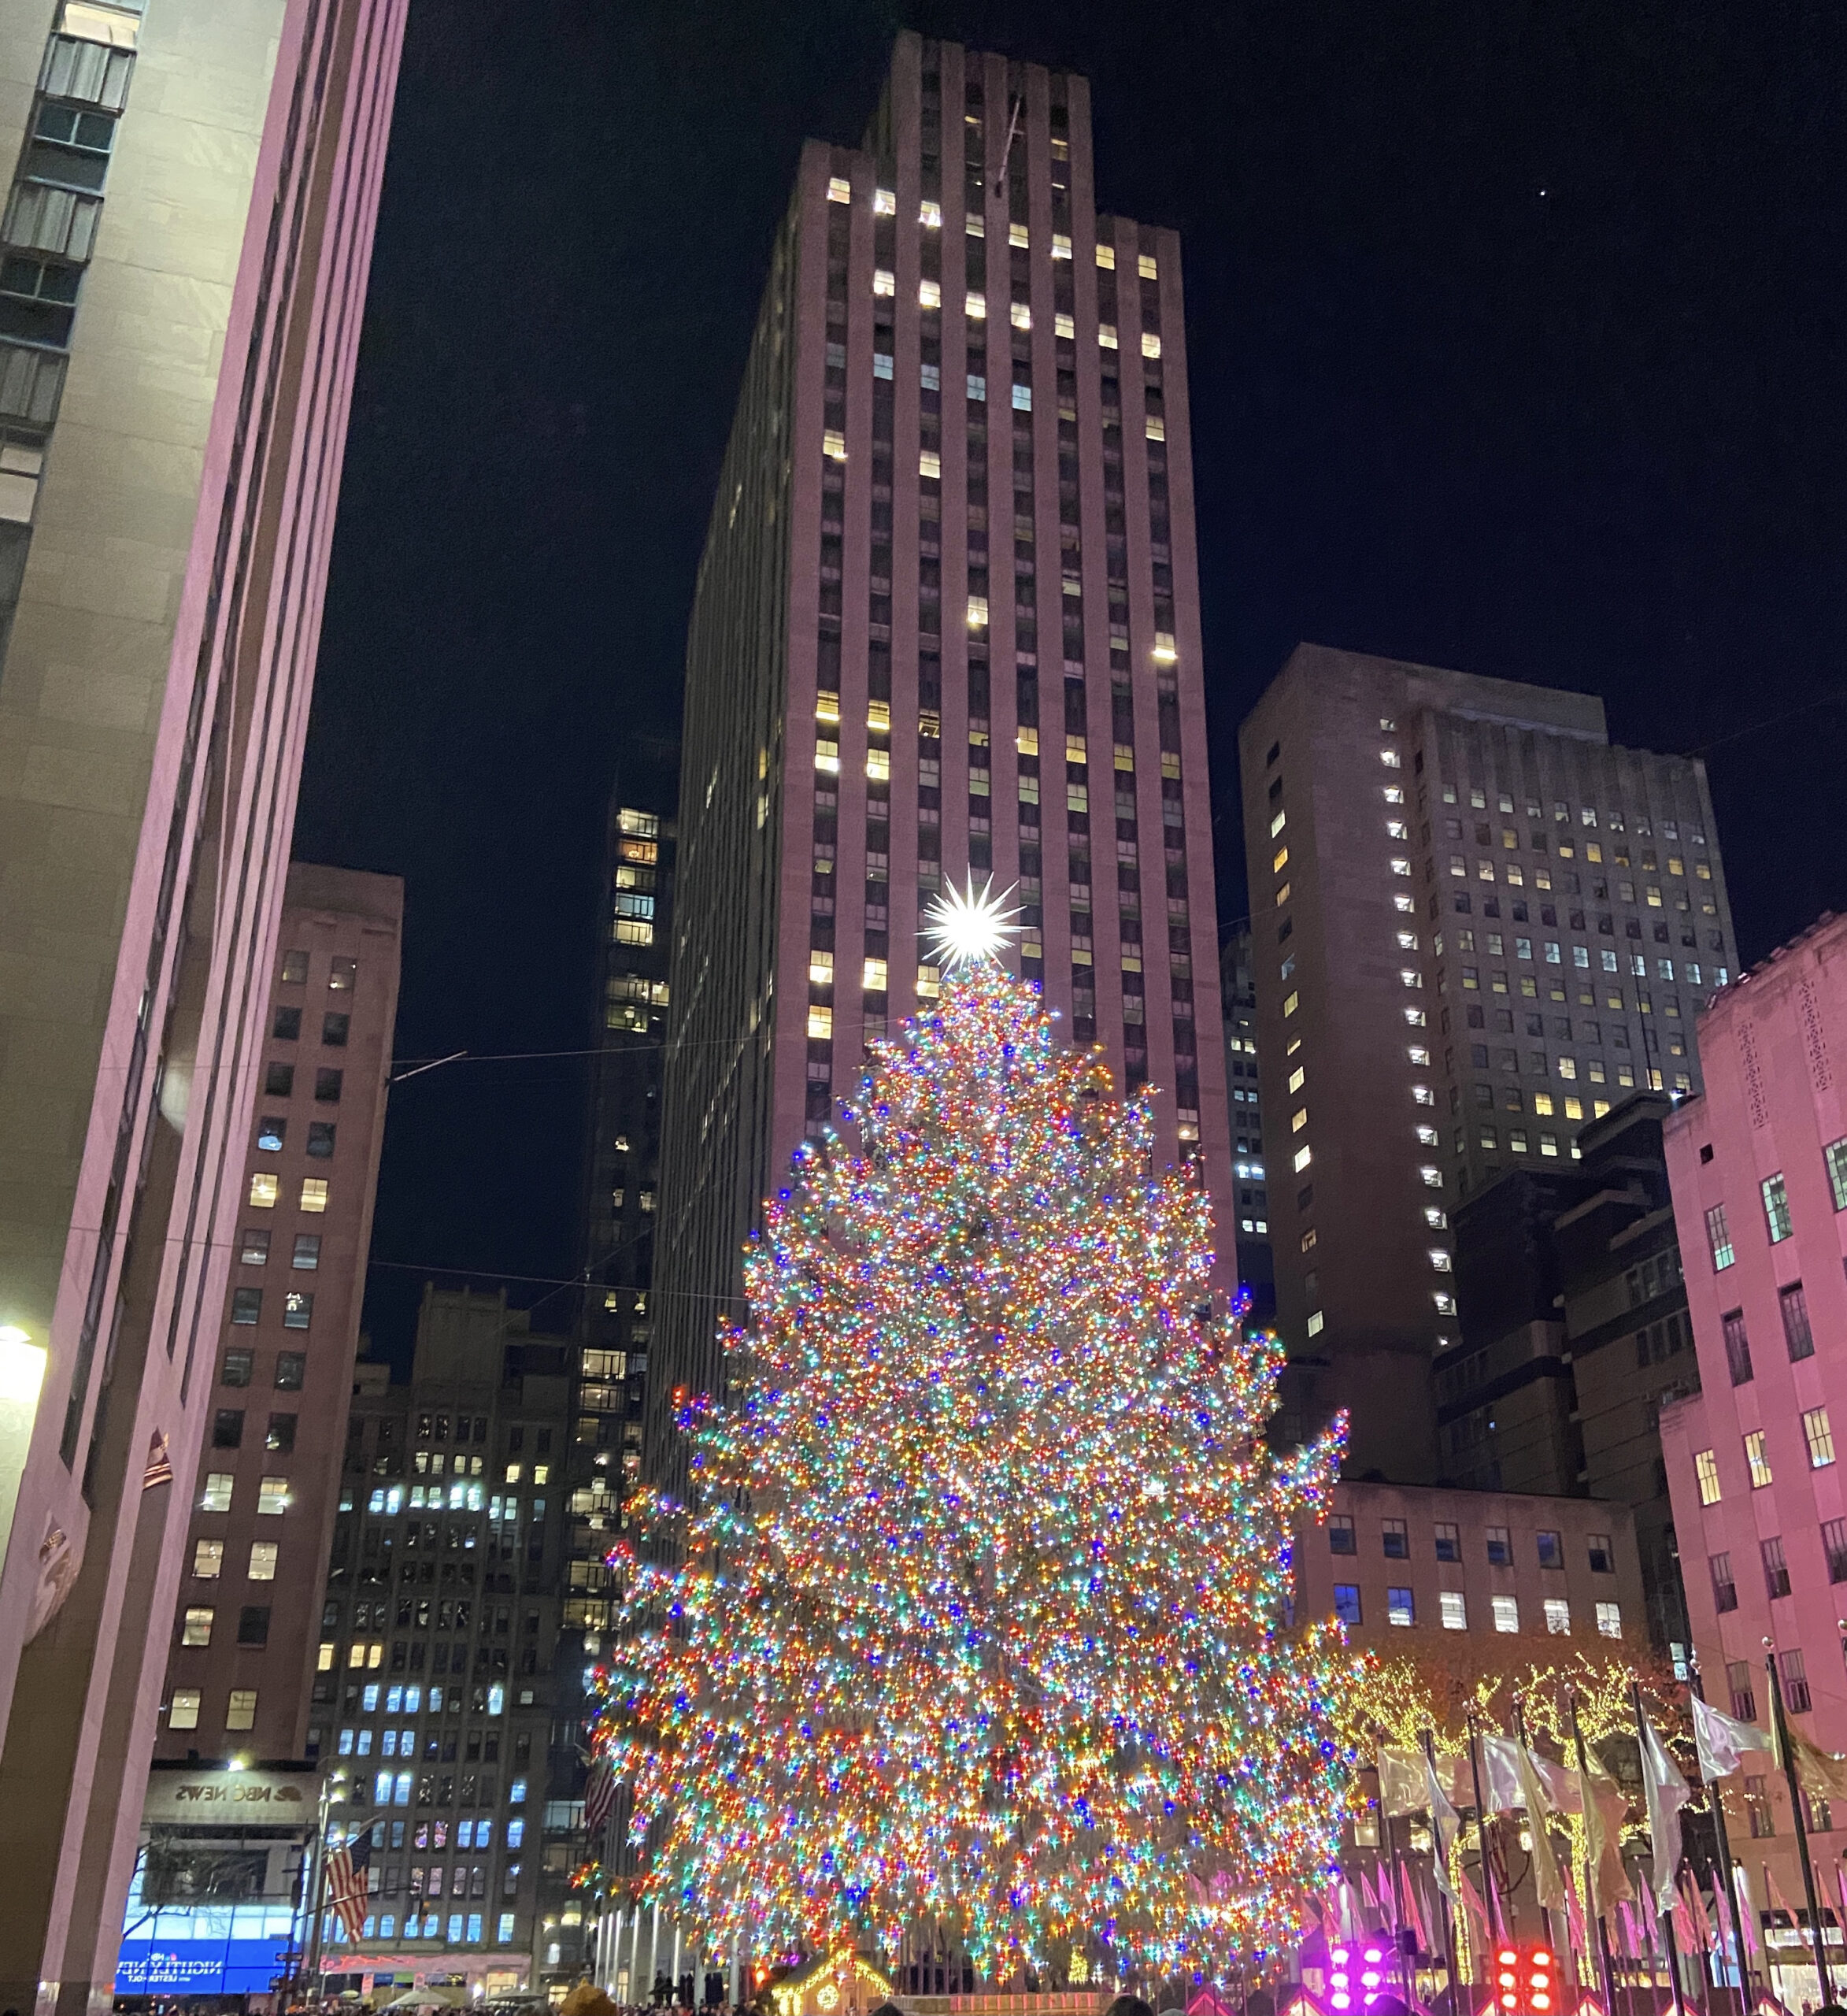 Visiting New York at Christmas